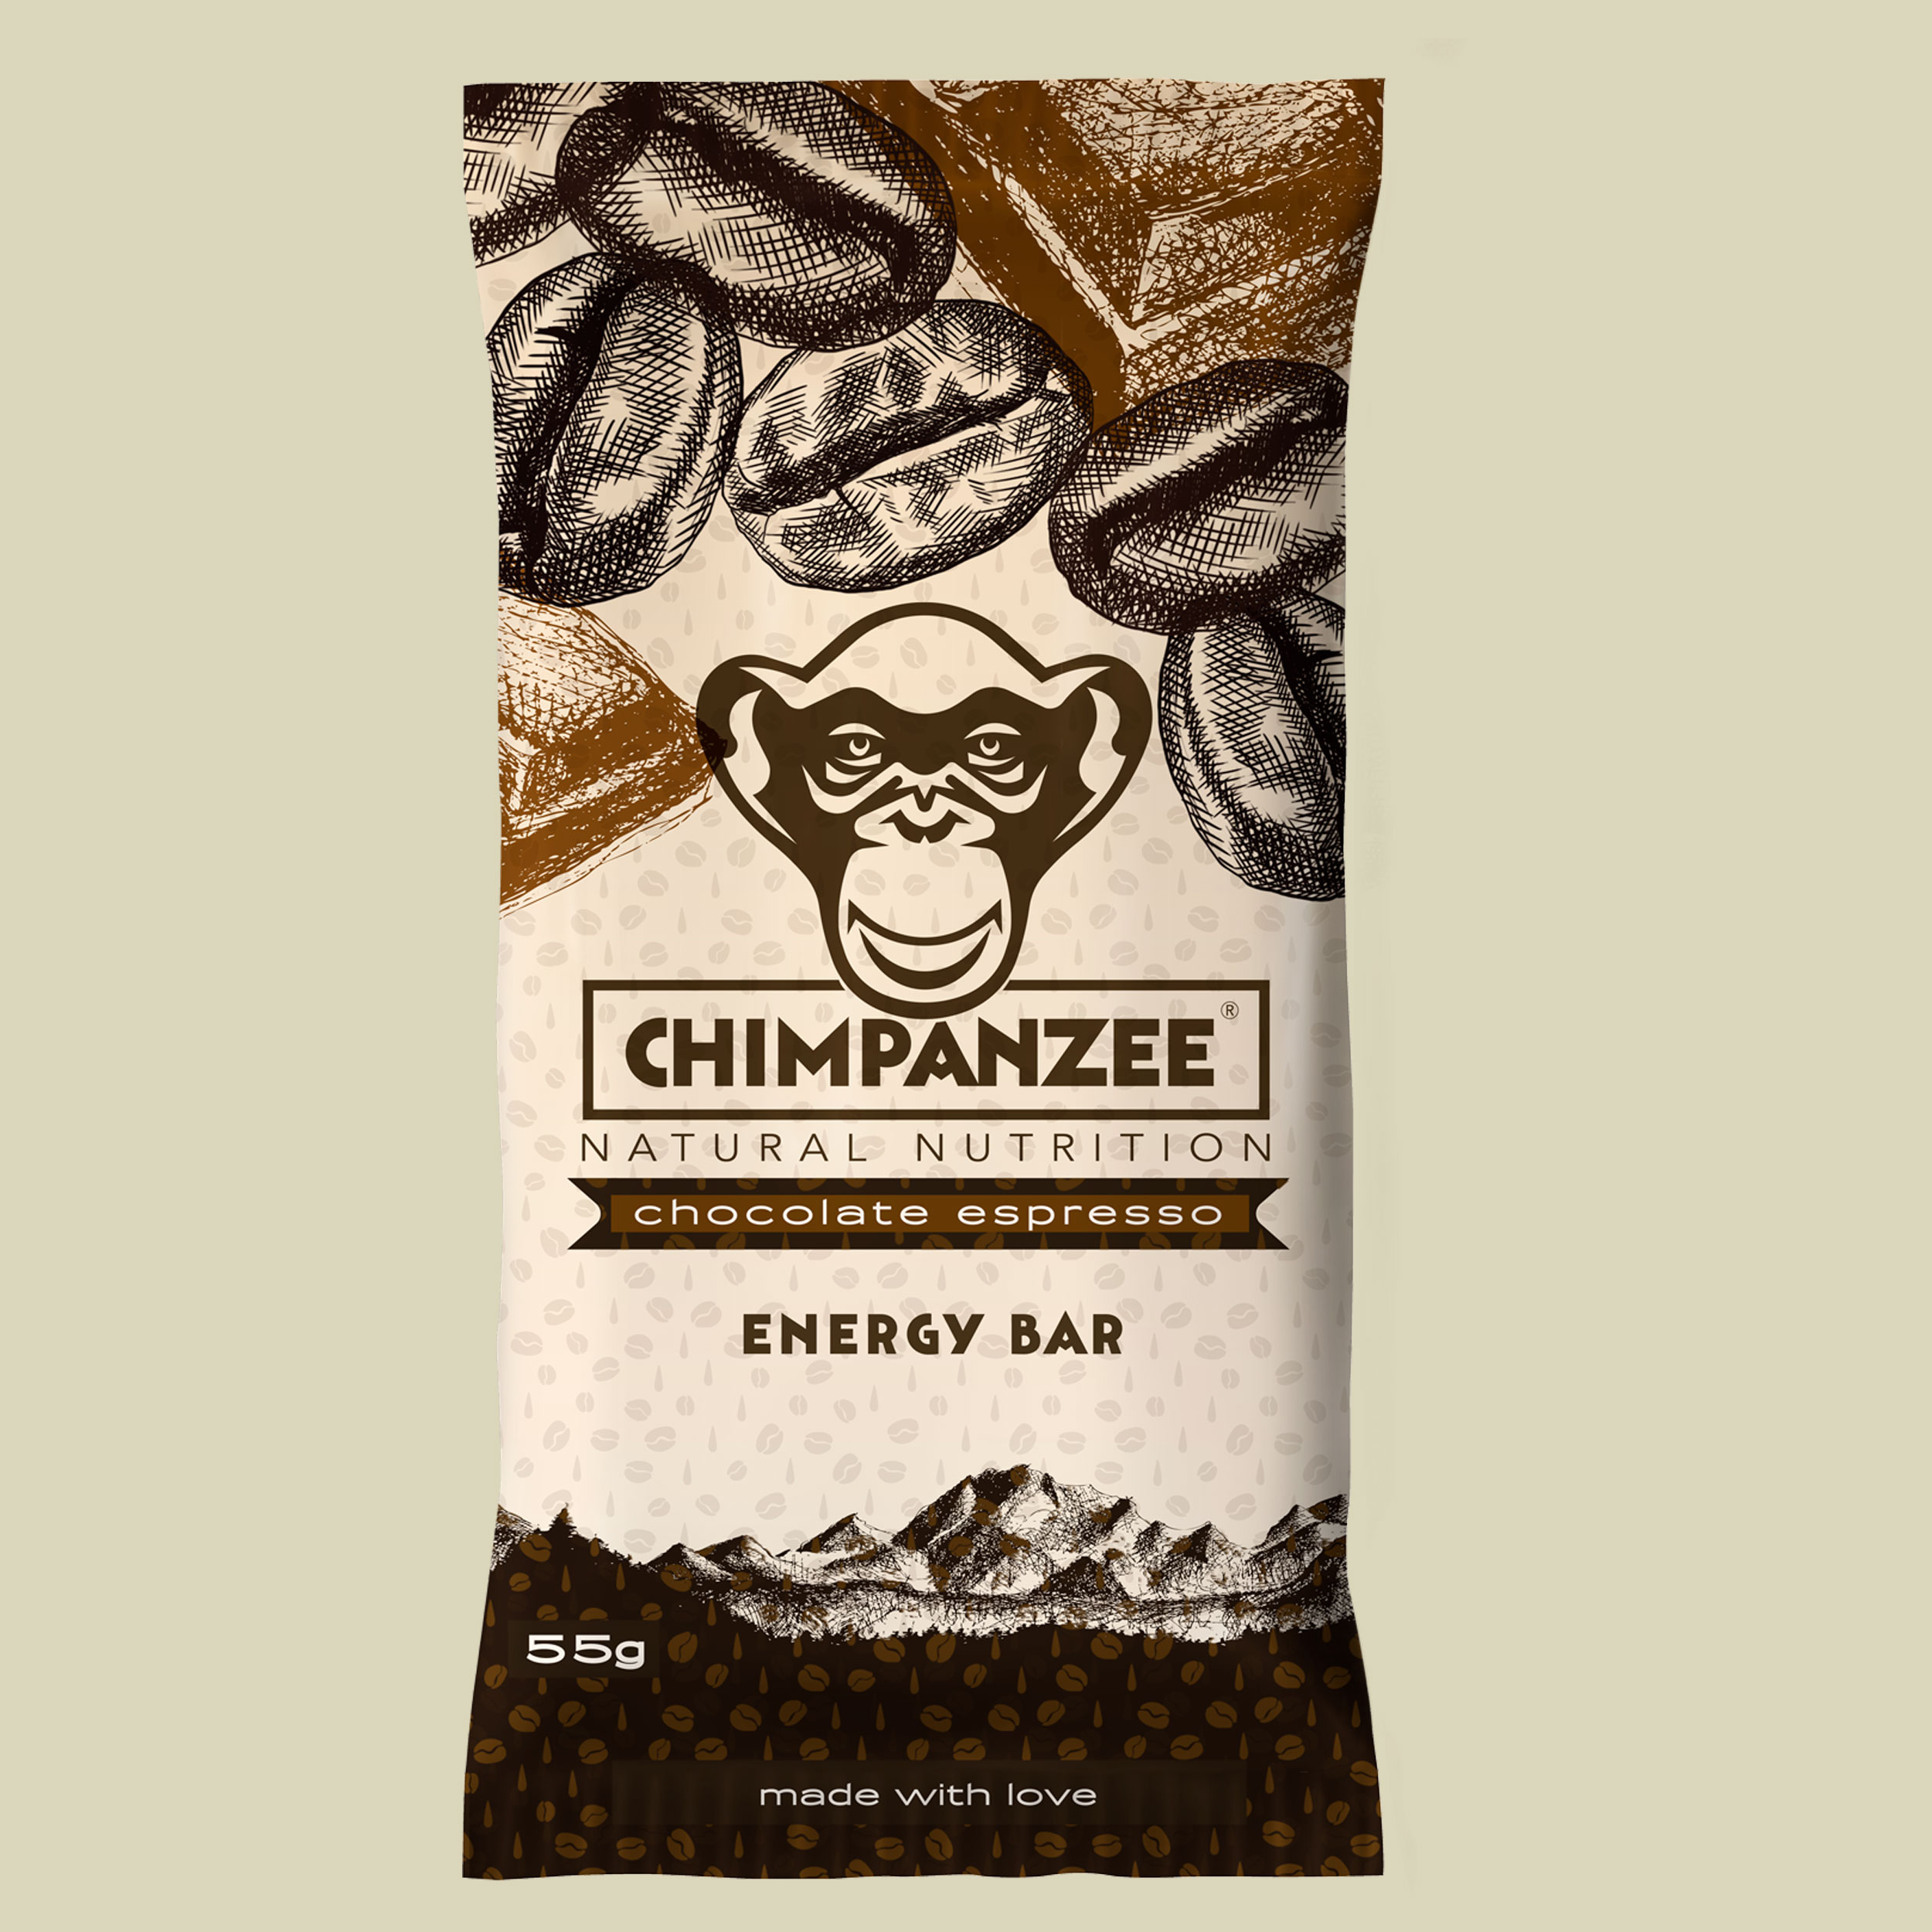 Energy Bar Chocolate Espresso 55g